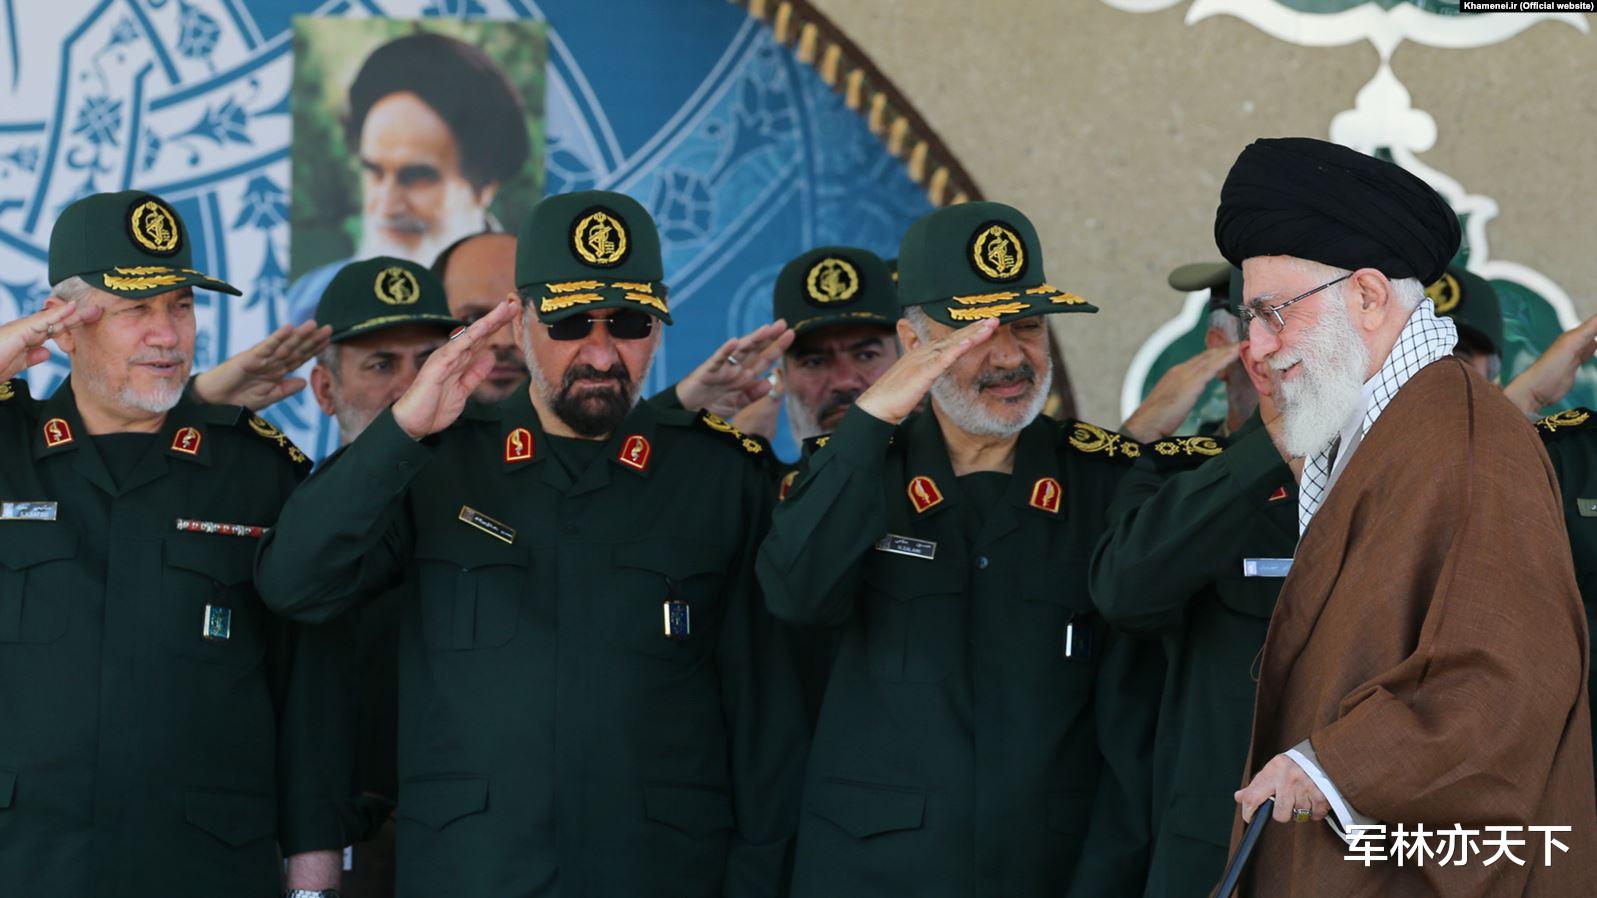 伊朗革命衛隊的綠色制服，簡約明快，配飾極少但絕對威嚴-圖2